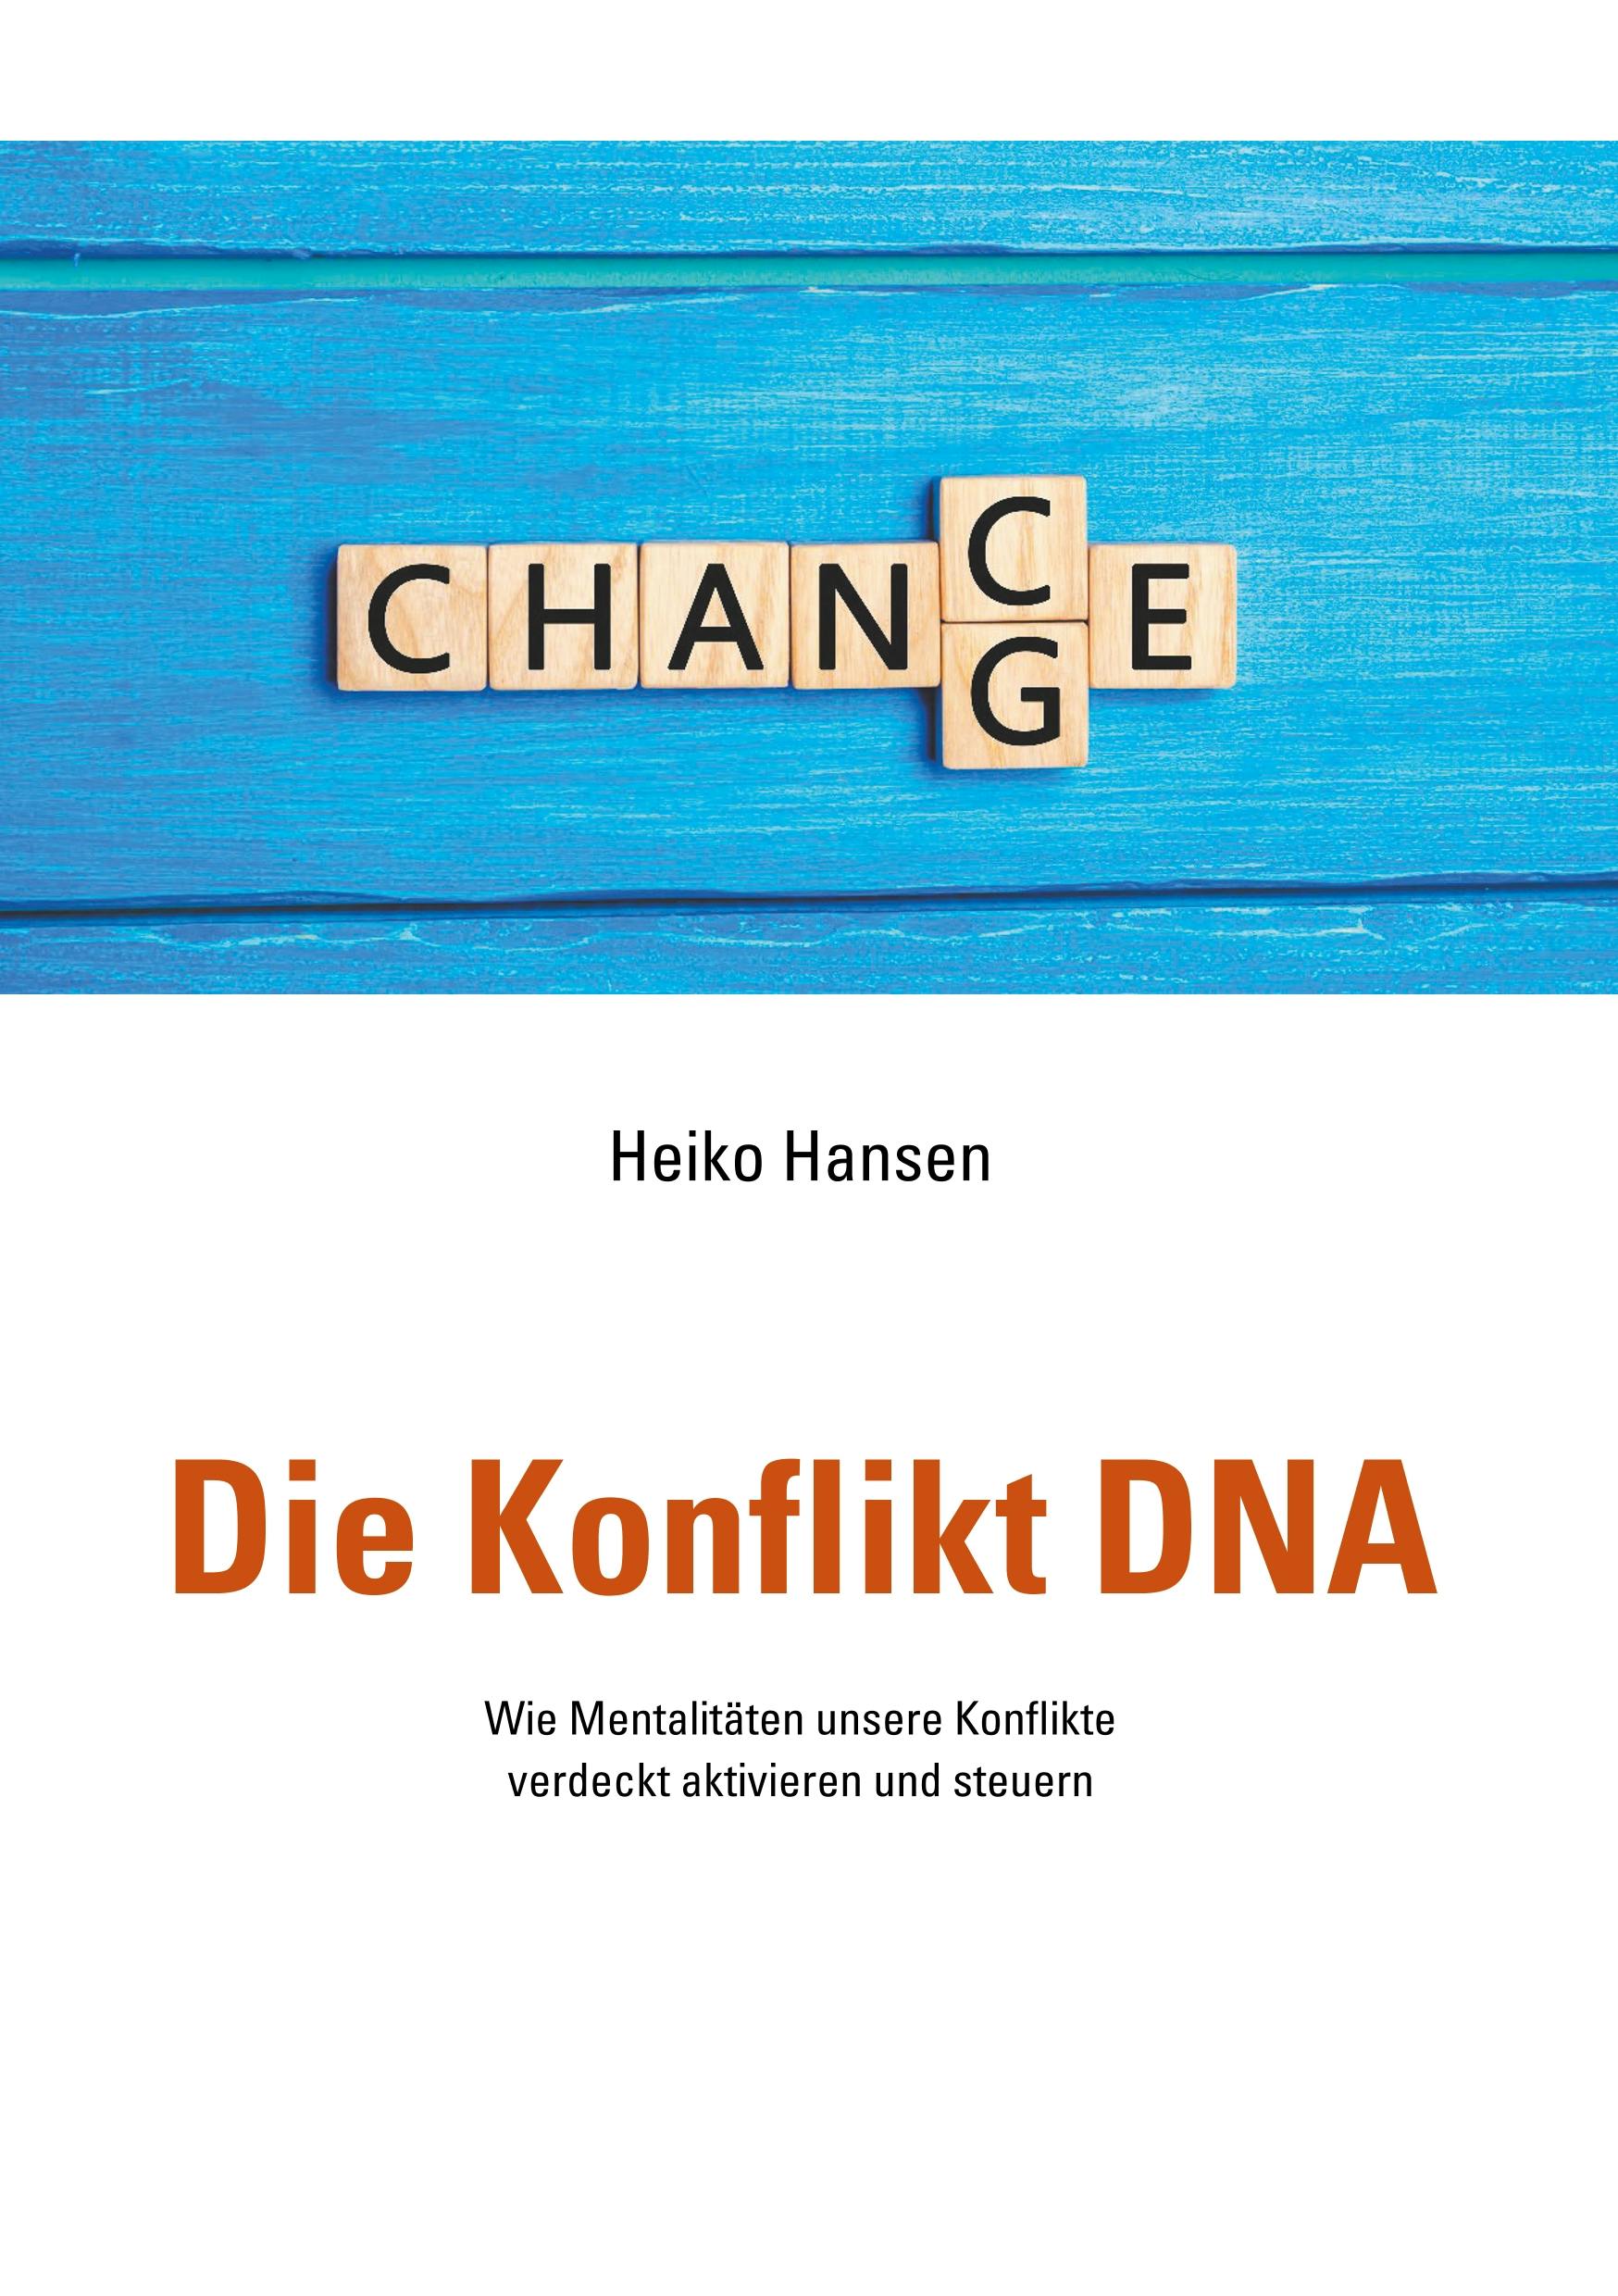 Die Konflikt DNA - Heiko Hansen